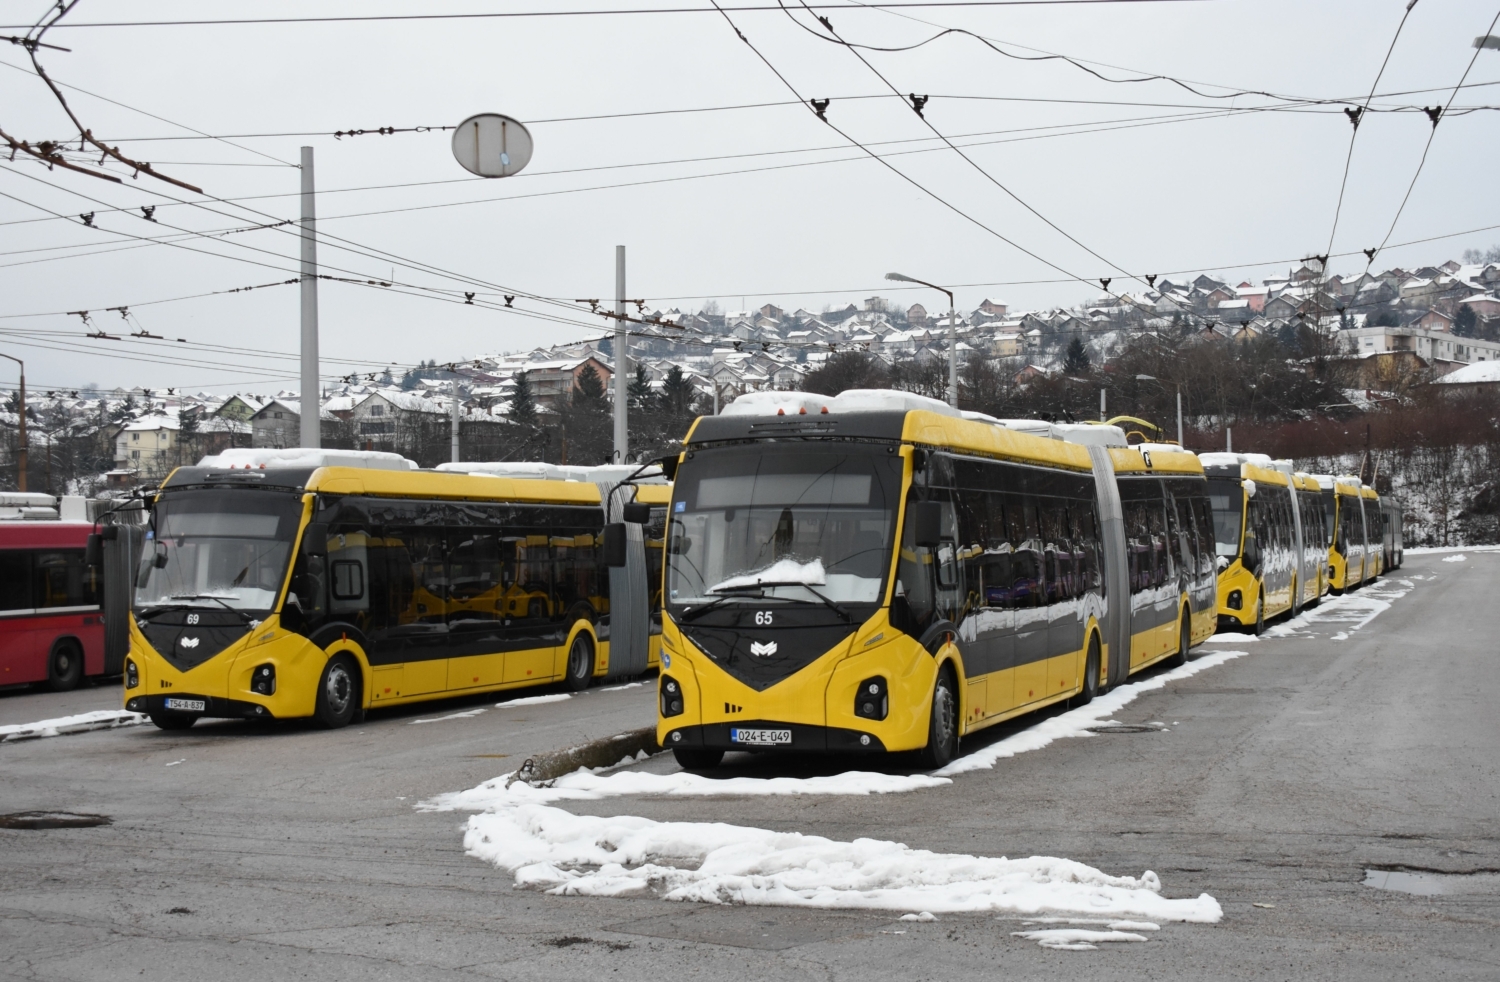 Do Sarajeva dorazilo v průběhu let 2022 a 2023 celkem 25 nových trolejbusů BKM 43300D běloruské provenience. S jejich dodávkami ovšem byly problémy – Bosna a Hercegovina se připojila k protiruským a k protiběloruským sankcím, což hrozilo dodávku trolejbusů zablokovat. Nakonec bylo dohodnuto, že trolejbusy ze základního kontraktu budou do země doručeny, avšak opci na dalších deset kusů už Sarajevo využít nemohlo. Současně se nová flotila potýká s nedostatkem náhradních dílů, neboť údržbu v podstatě nelze legálně zajišťovat. (foto: Libor Hinčica)